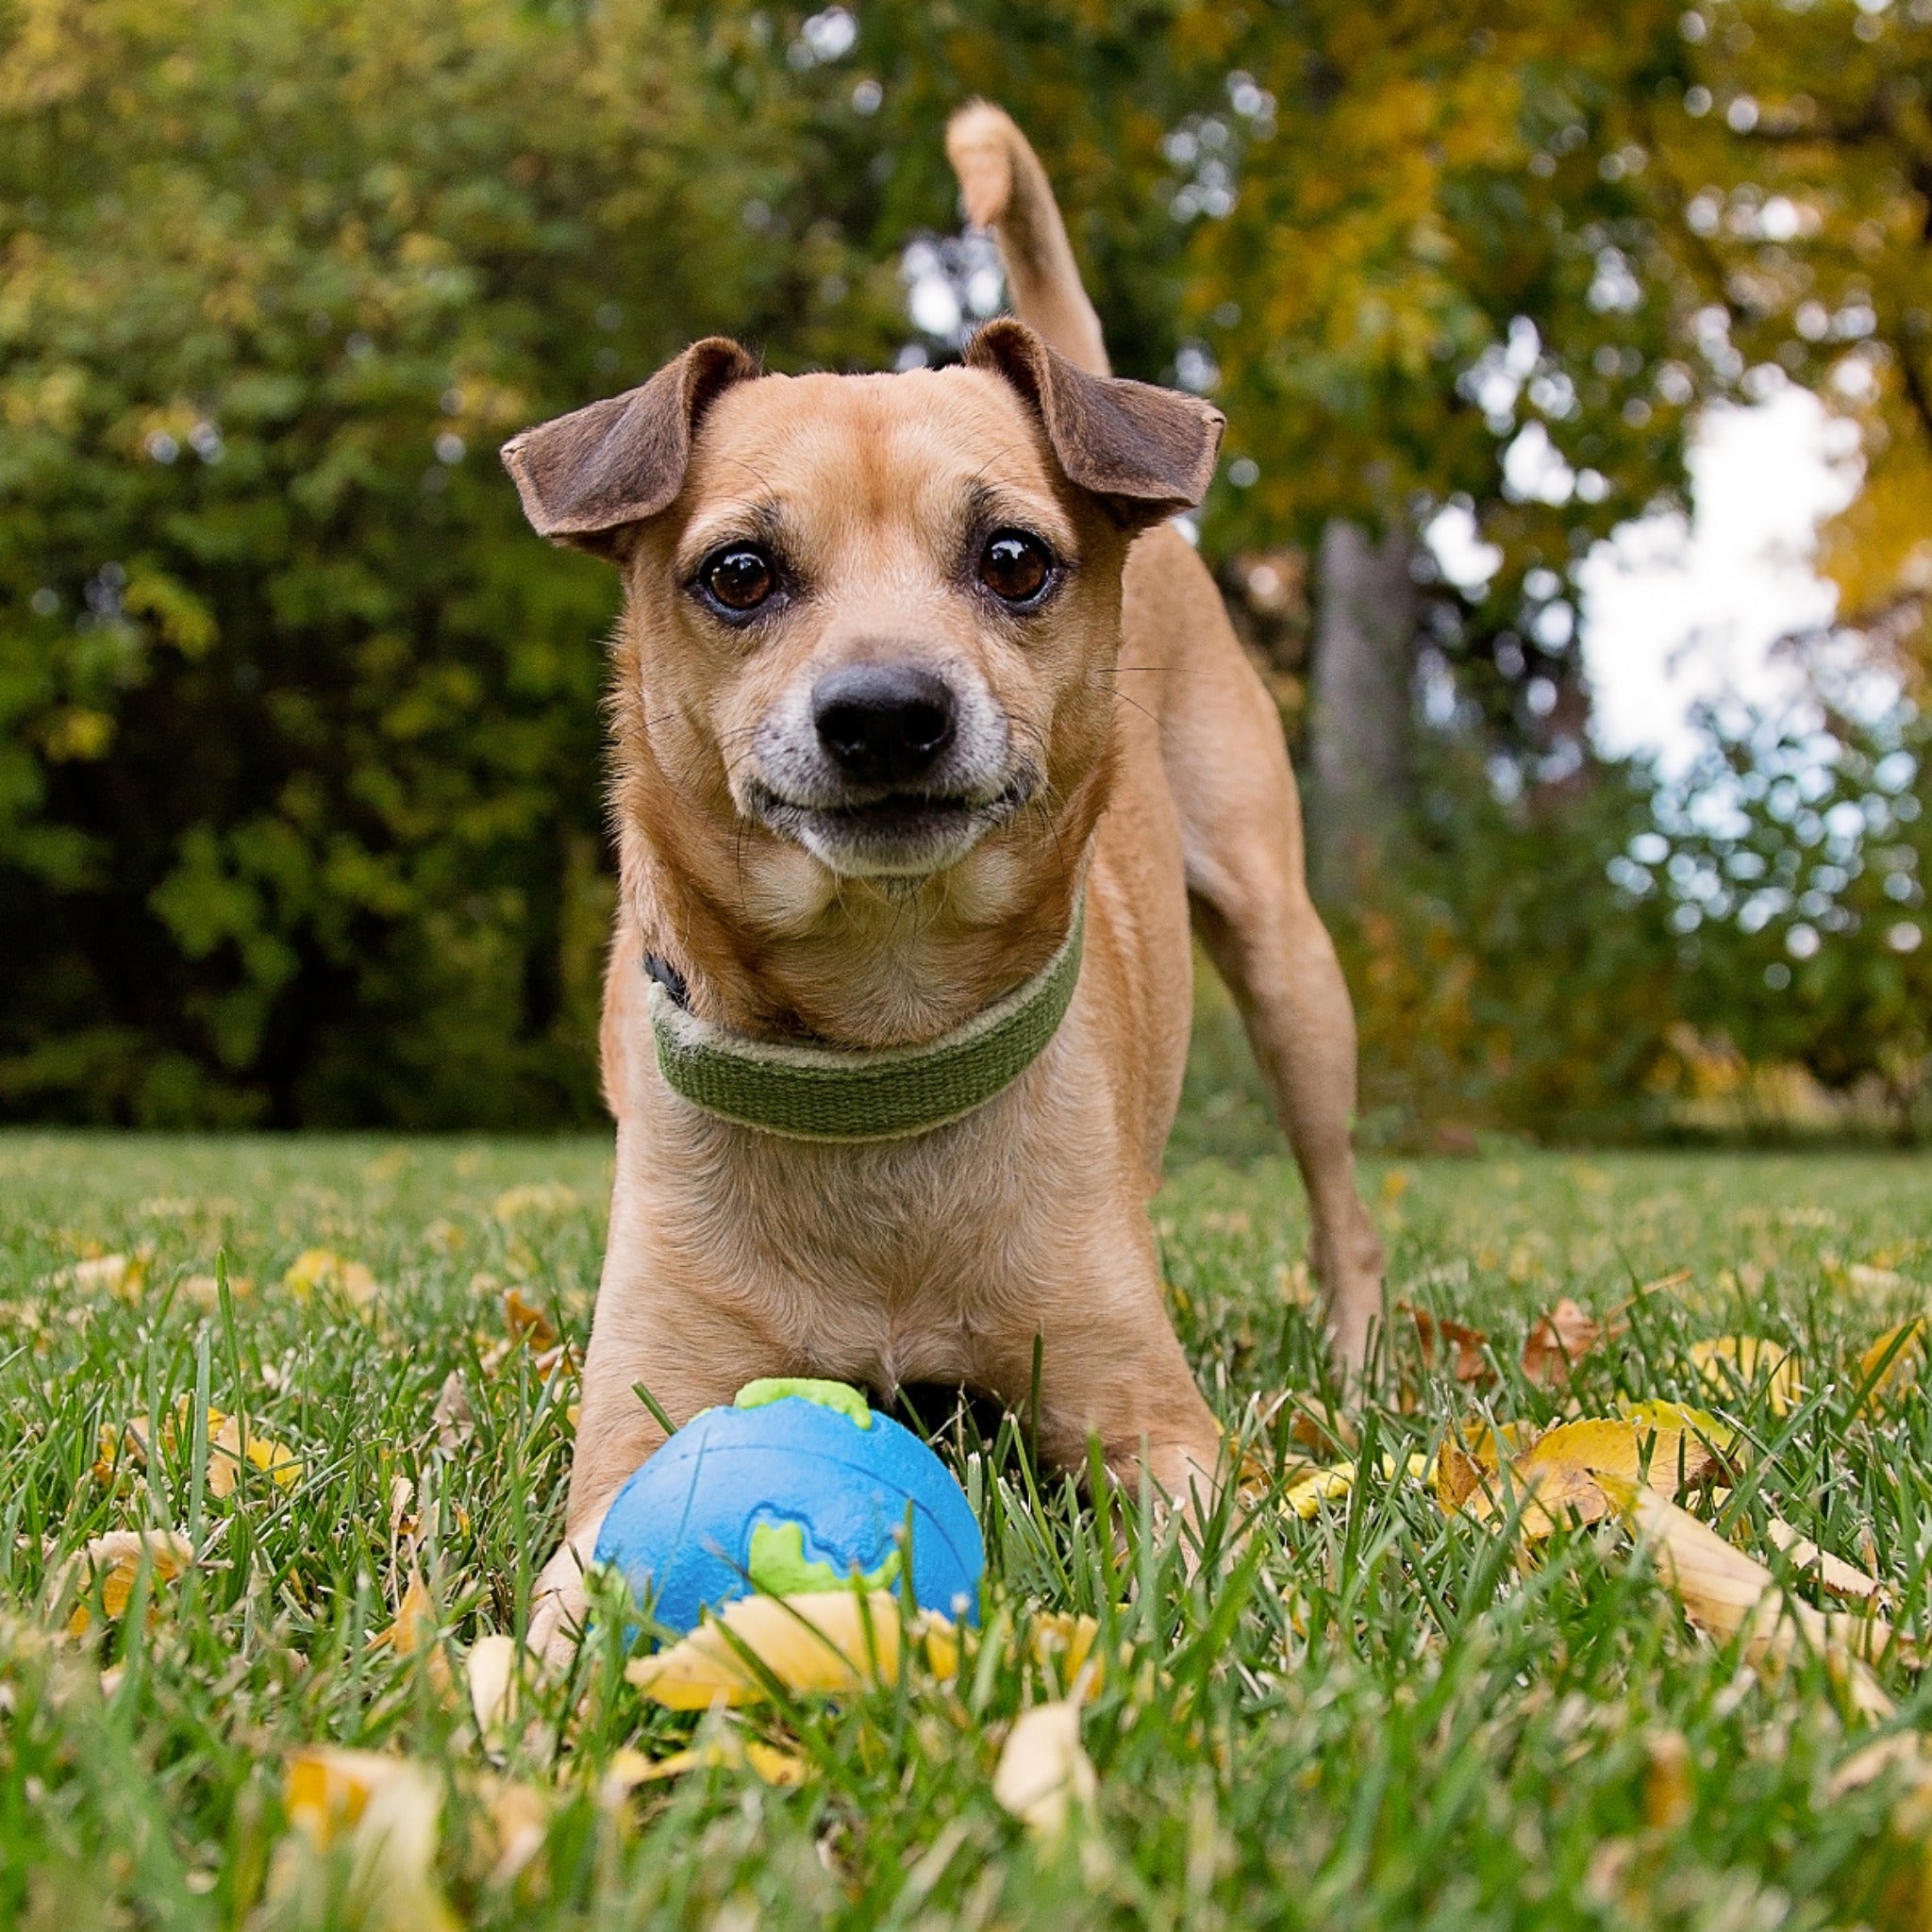 Planet Dog Orbee-Tuff Planet Ball, Hundespielzeug - Woofshack